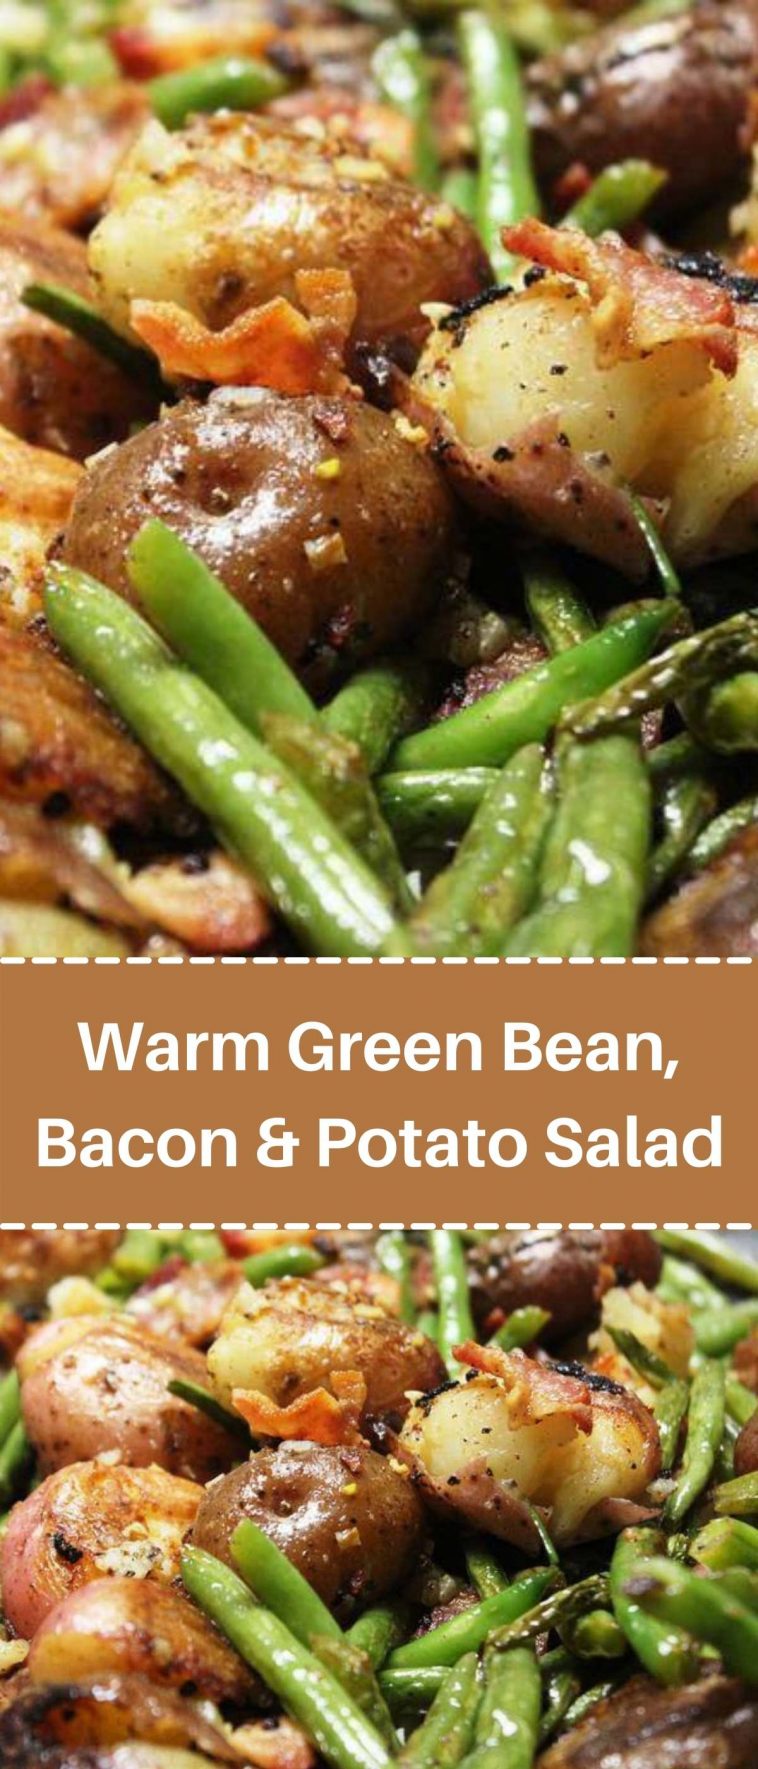 Warm Green Bean, Bacon & Potato Salad